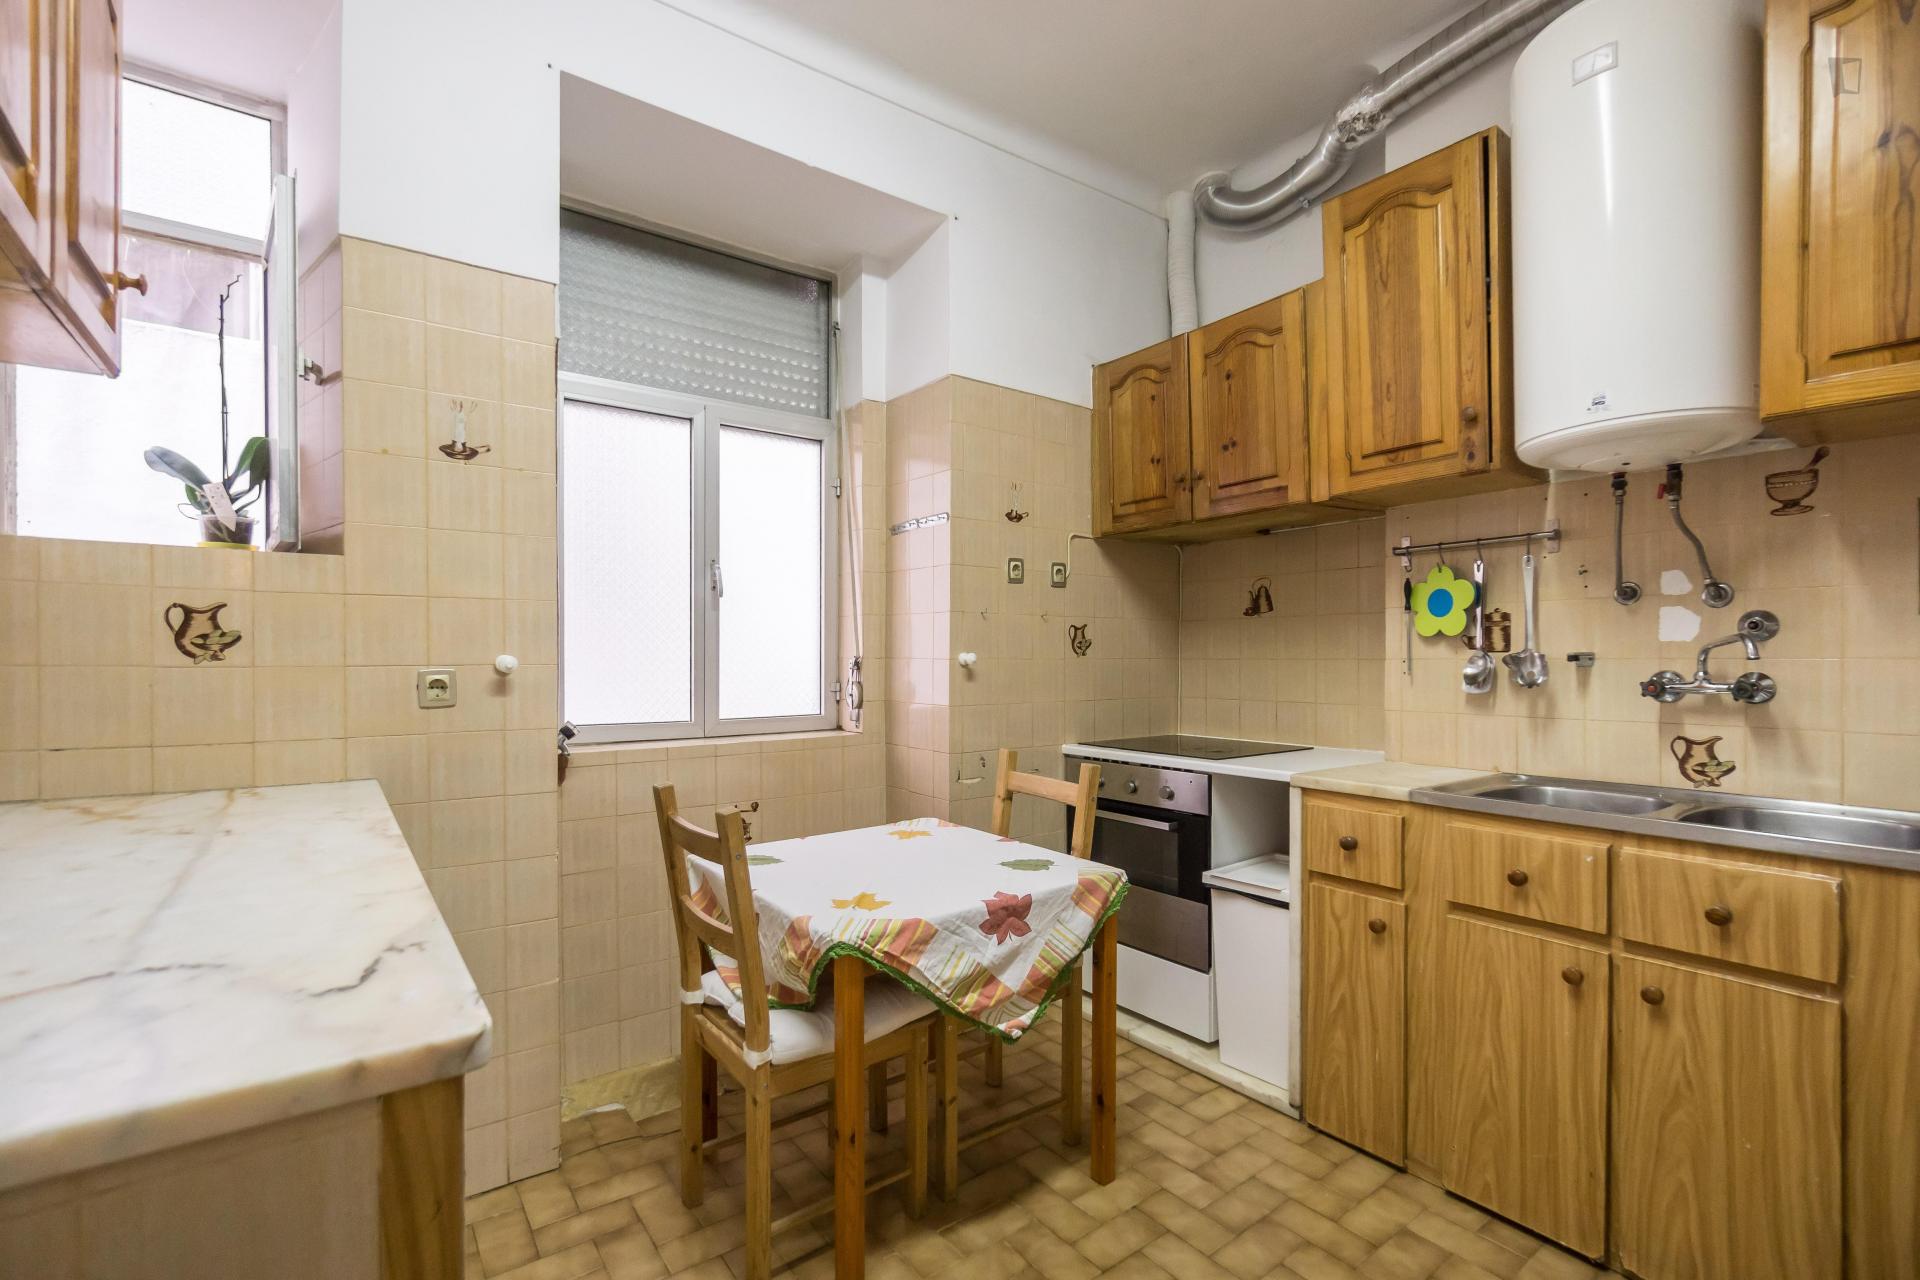 Teixeira- Single bedroom in shared flat in Lisbon